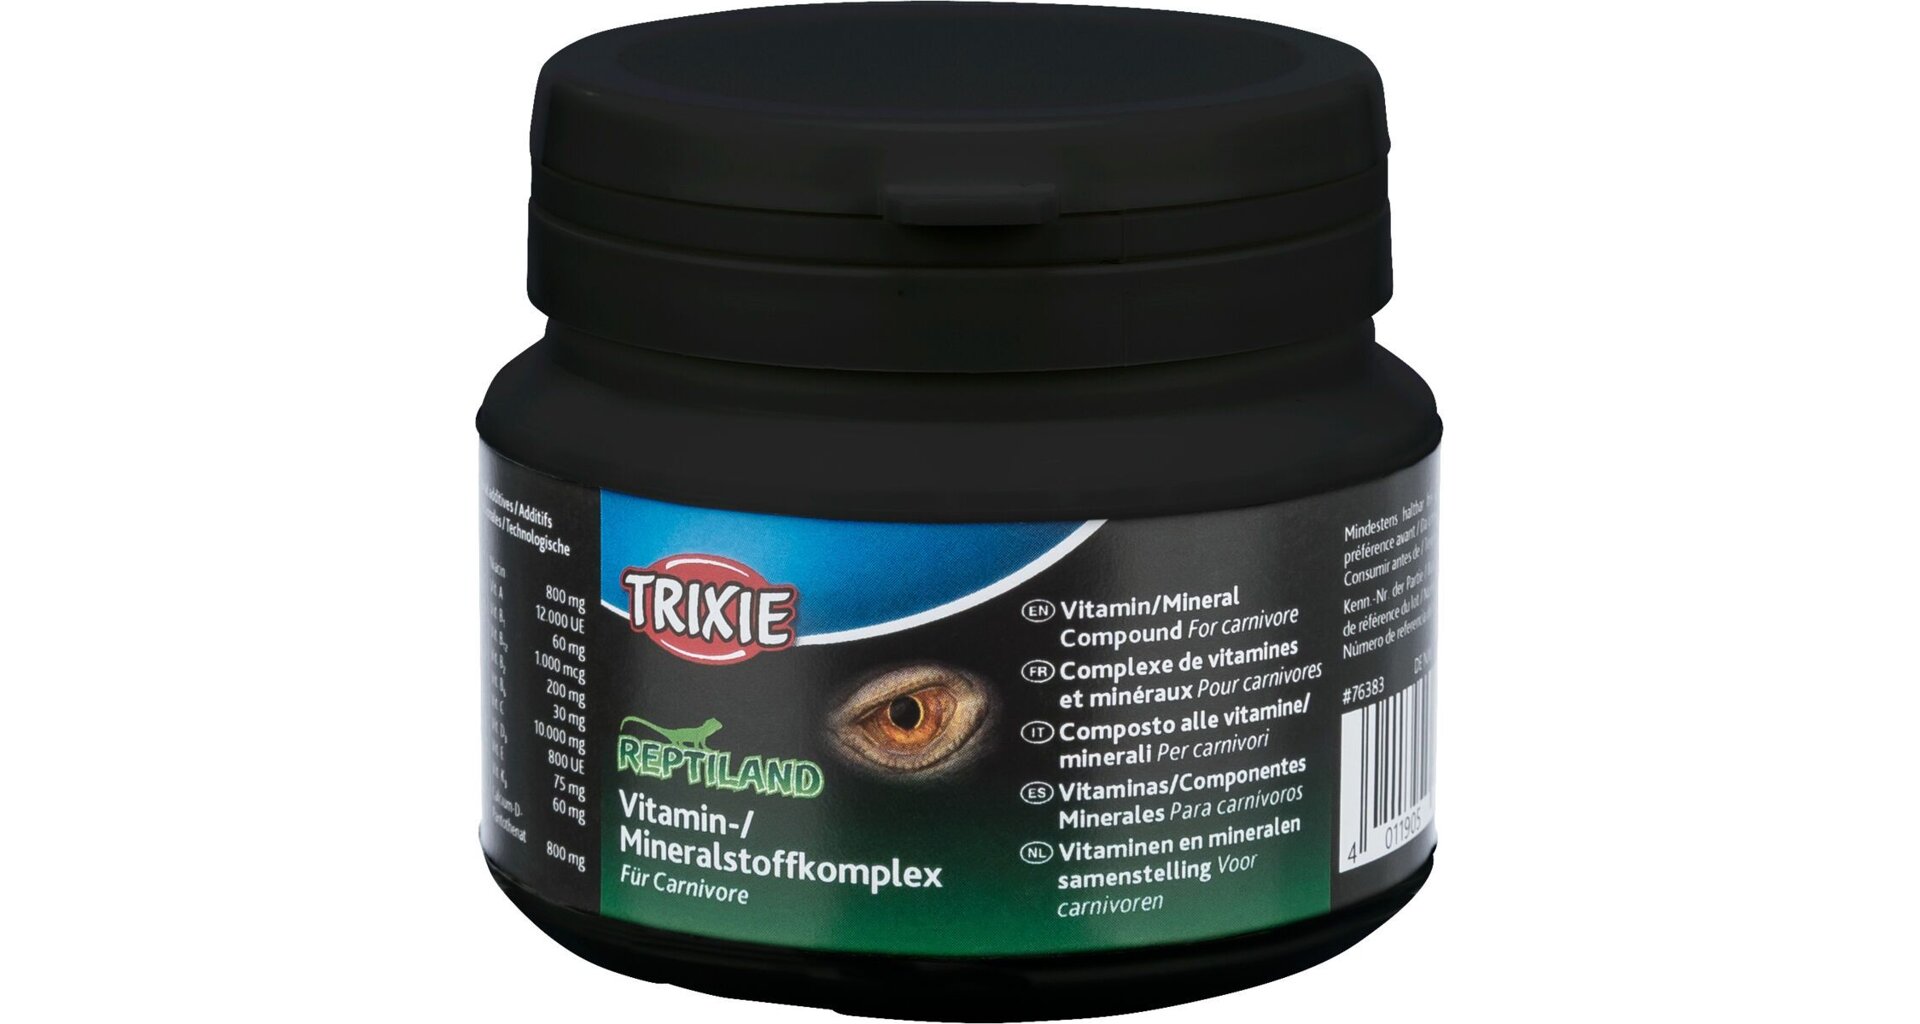 Trixie REPTILAND směs minerálů a vitamínů pro masožravé plazy, 80 g